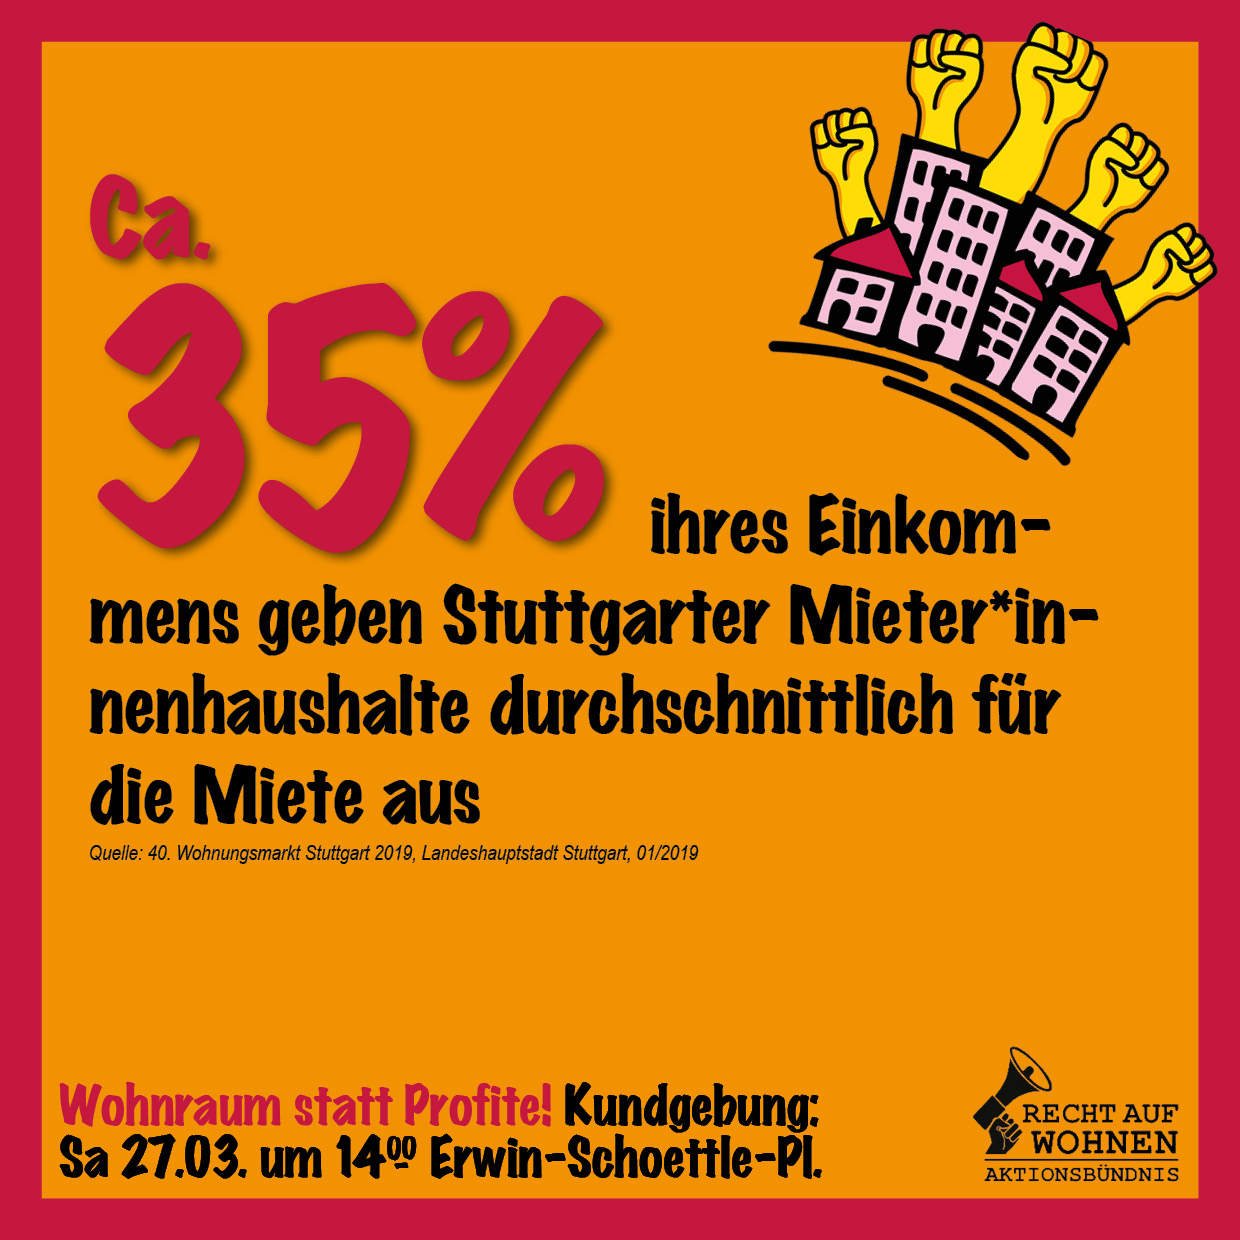 Stuttgart: Durchnittlich 35% des Einkommens für die Miete